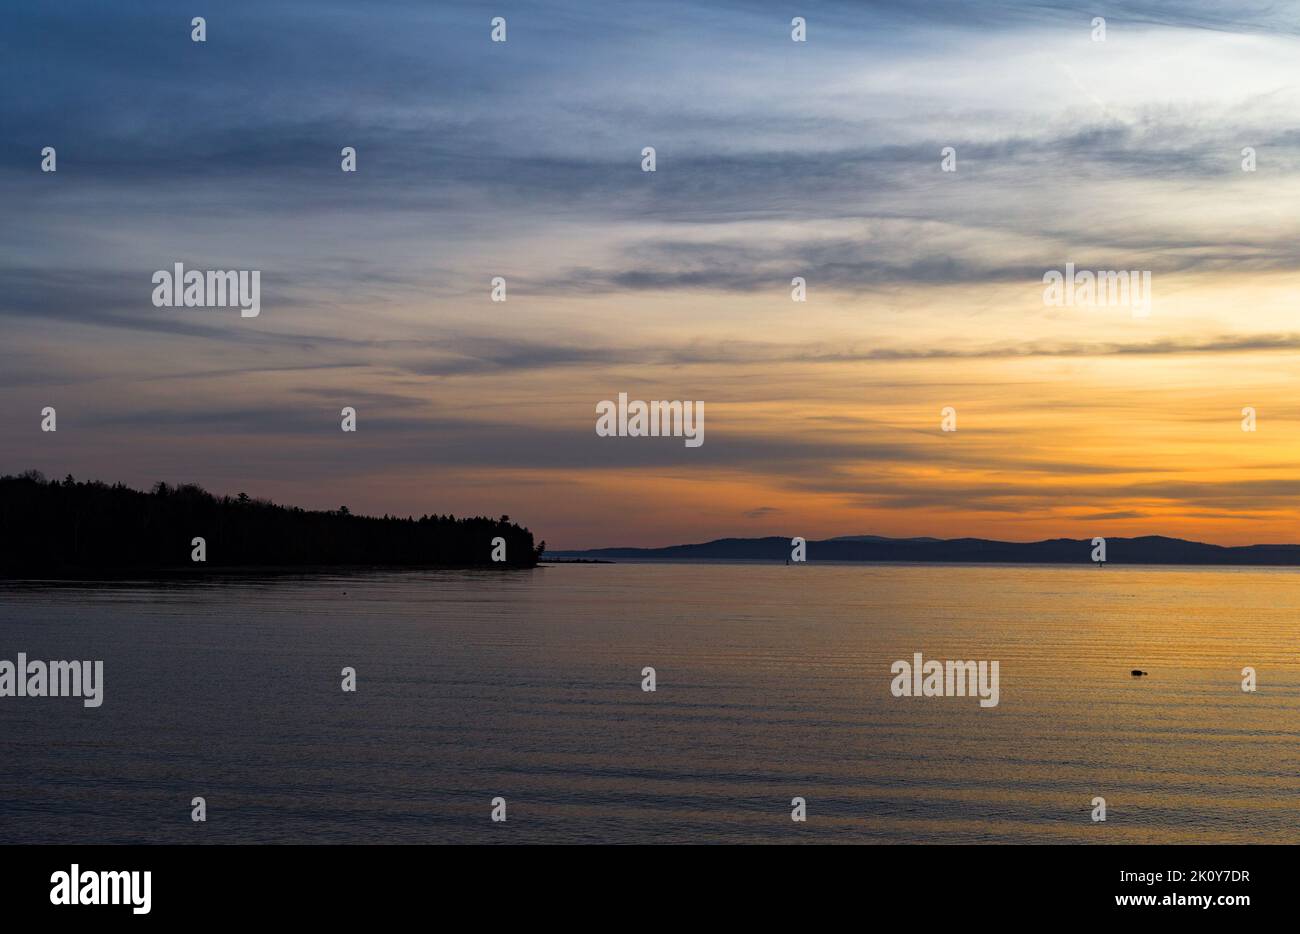 Amanecer en la costa de Maine con una boya flotante de langosta y la península de Sears Island al fondo. Foto de stock